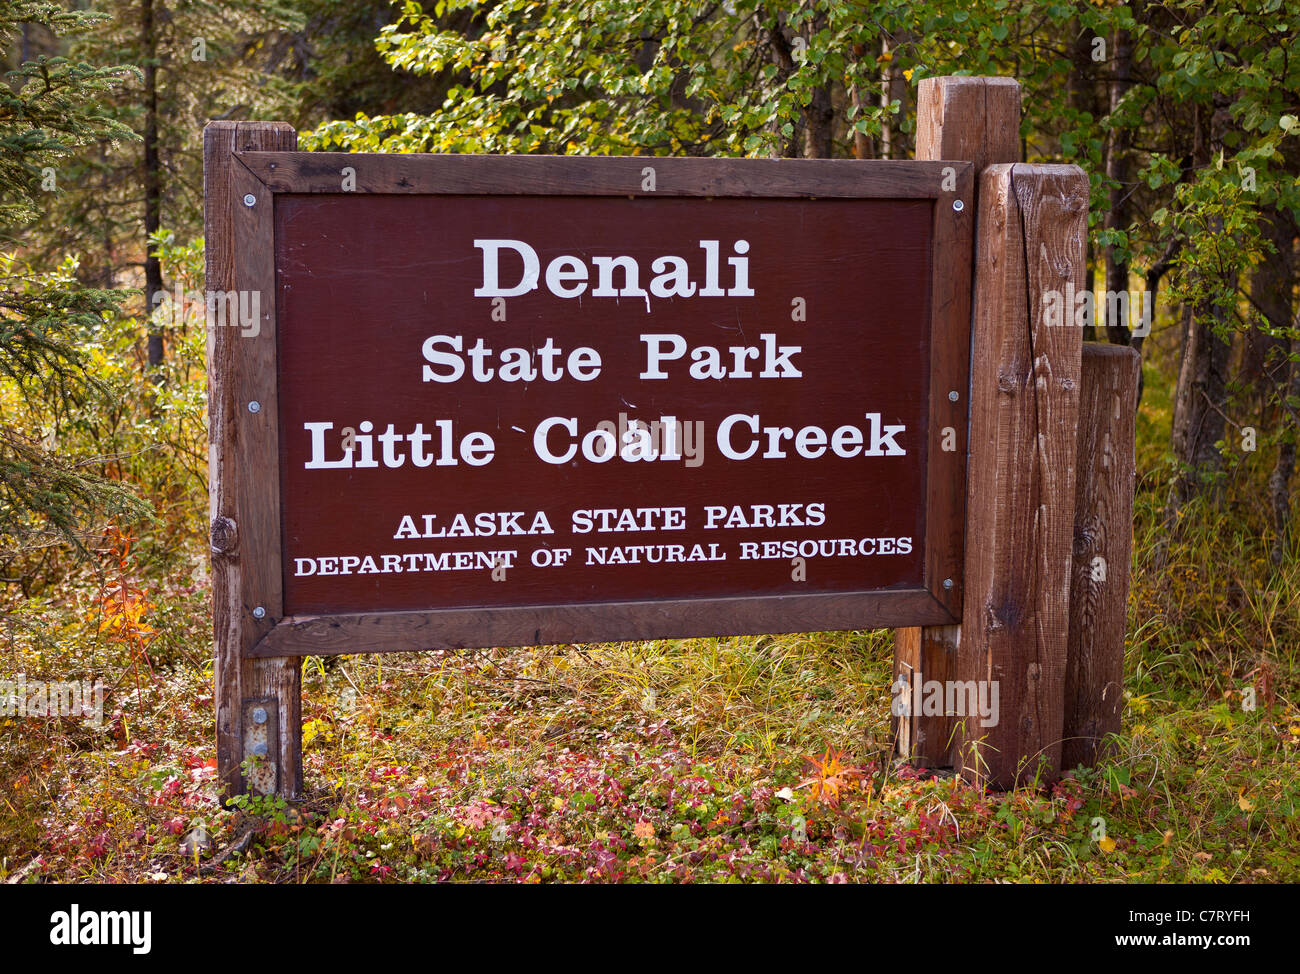 DENALI STATE PARK, Alaska, USA - Signe pour Denali State Park, peu de charbon Creek sentier de randonnée. Banque D'Images